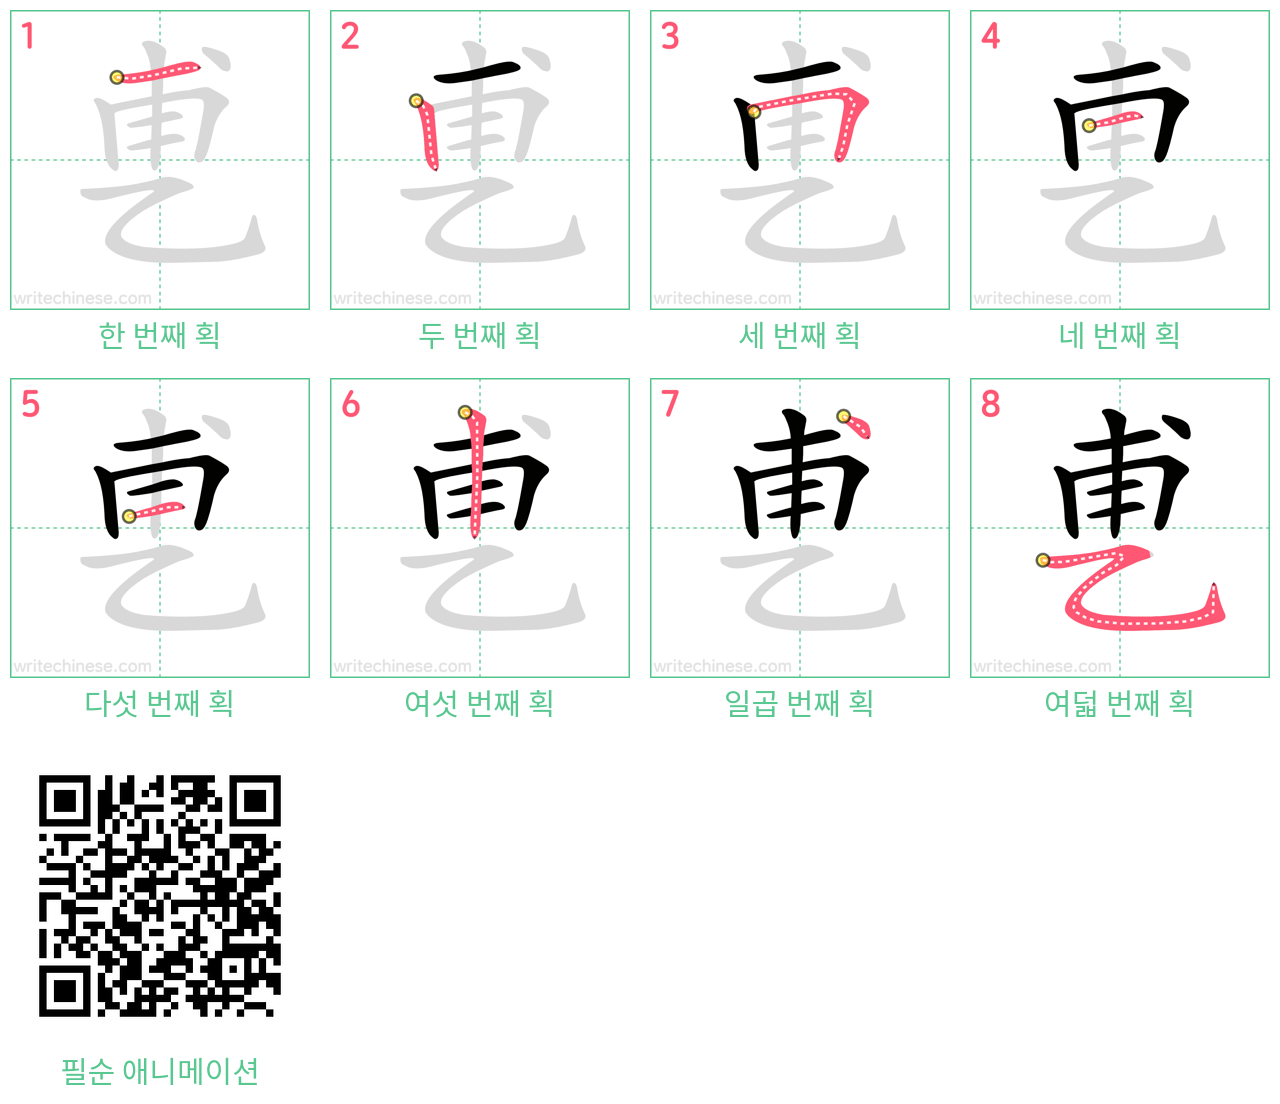 乶 step-by-step stroke order diagrams